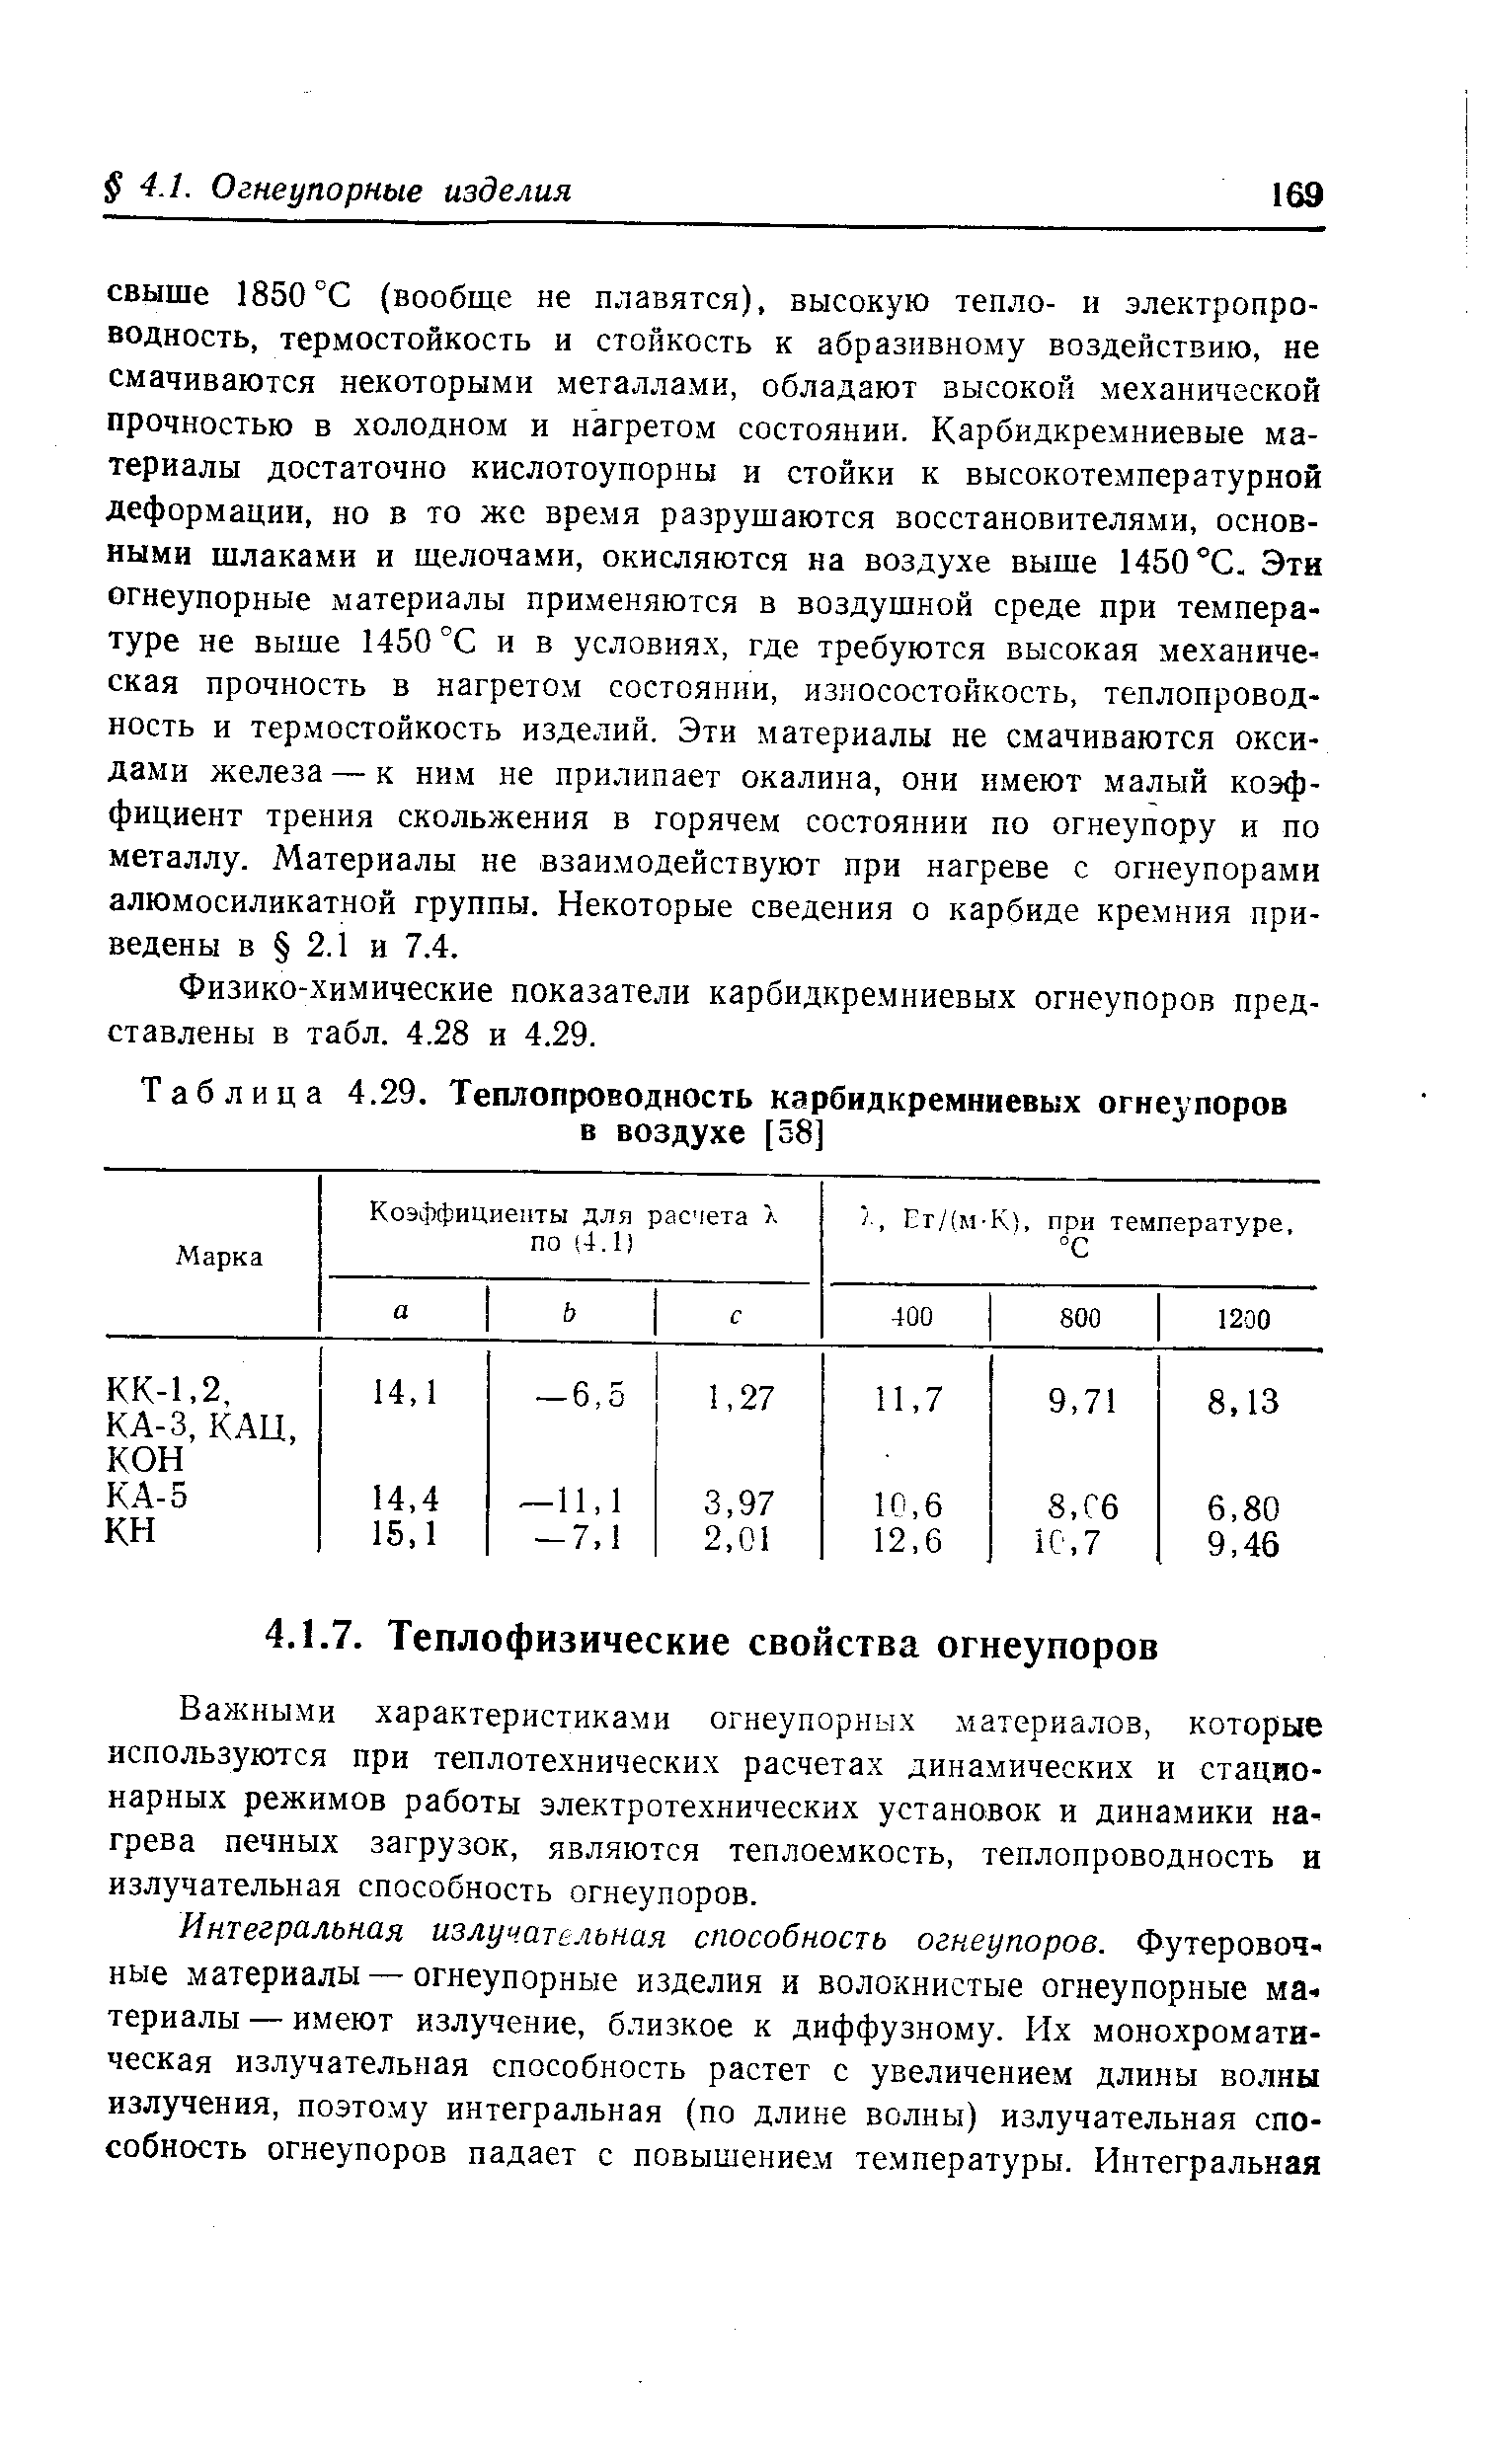 Таблица 4.29. Теплопроводность карбидкремниевых огнеупоров в воздухе [38]
